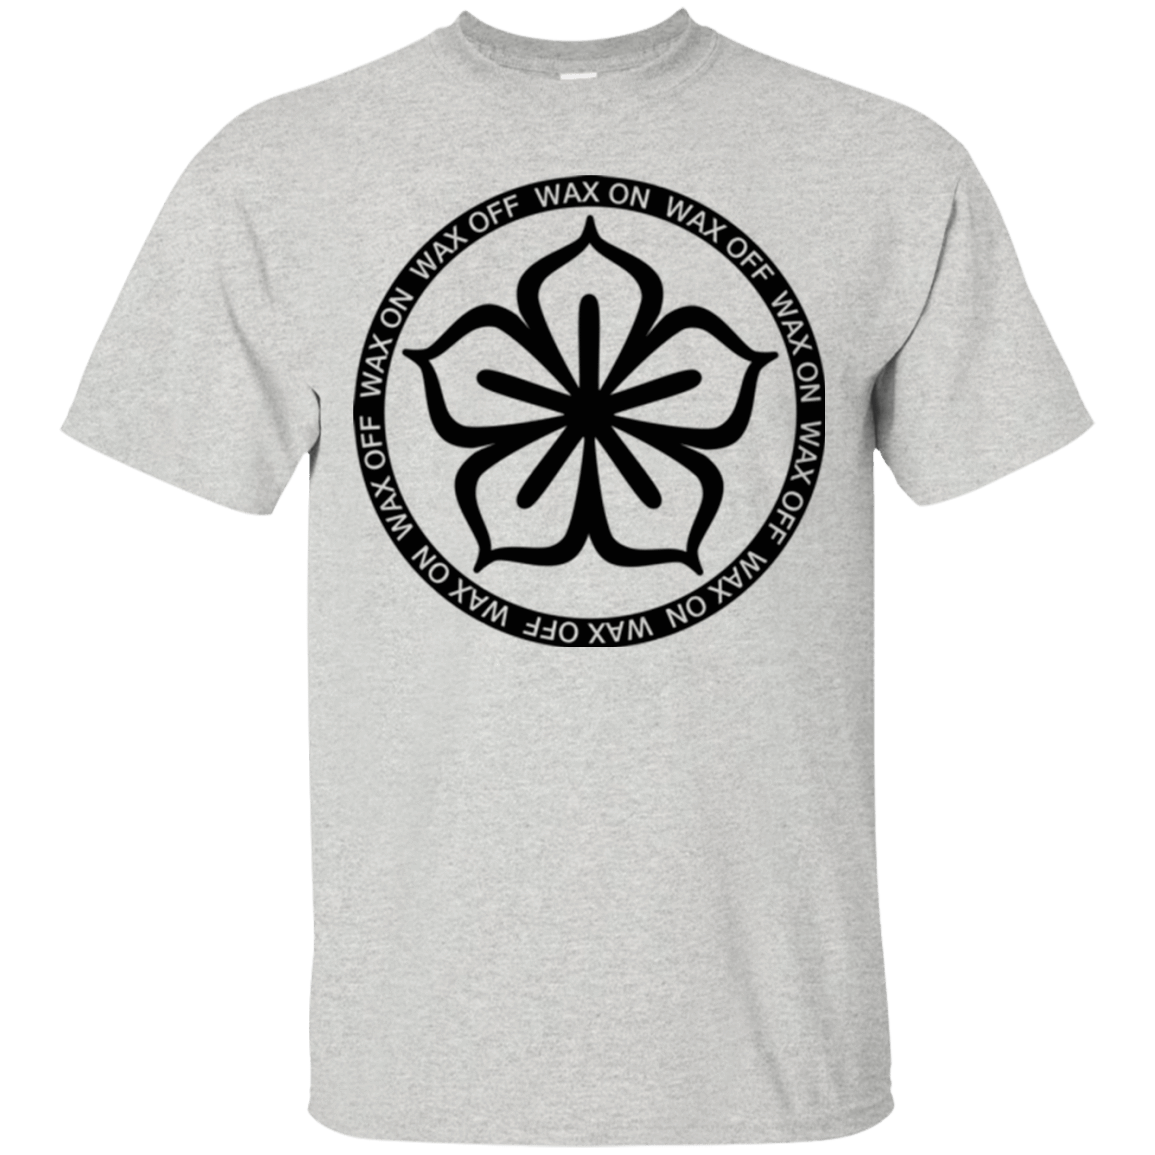 T-Shirts Ash / Small Lotus Flower T-Shirt